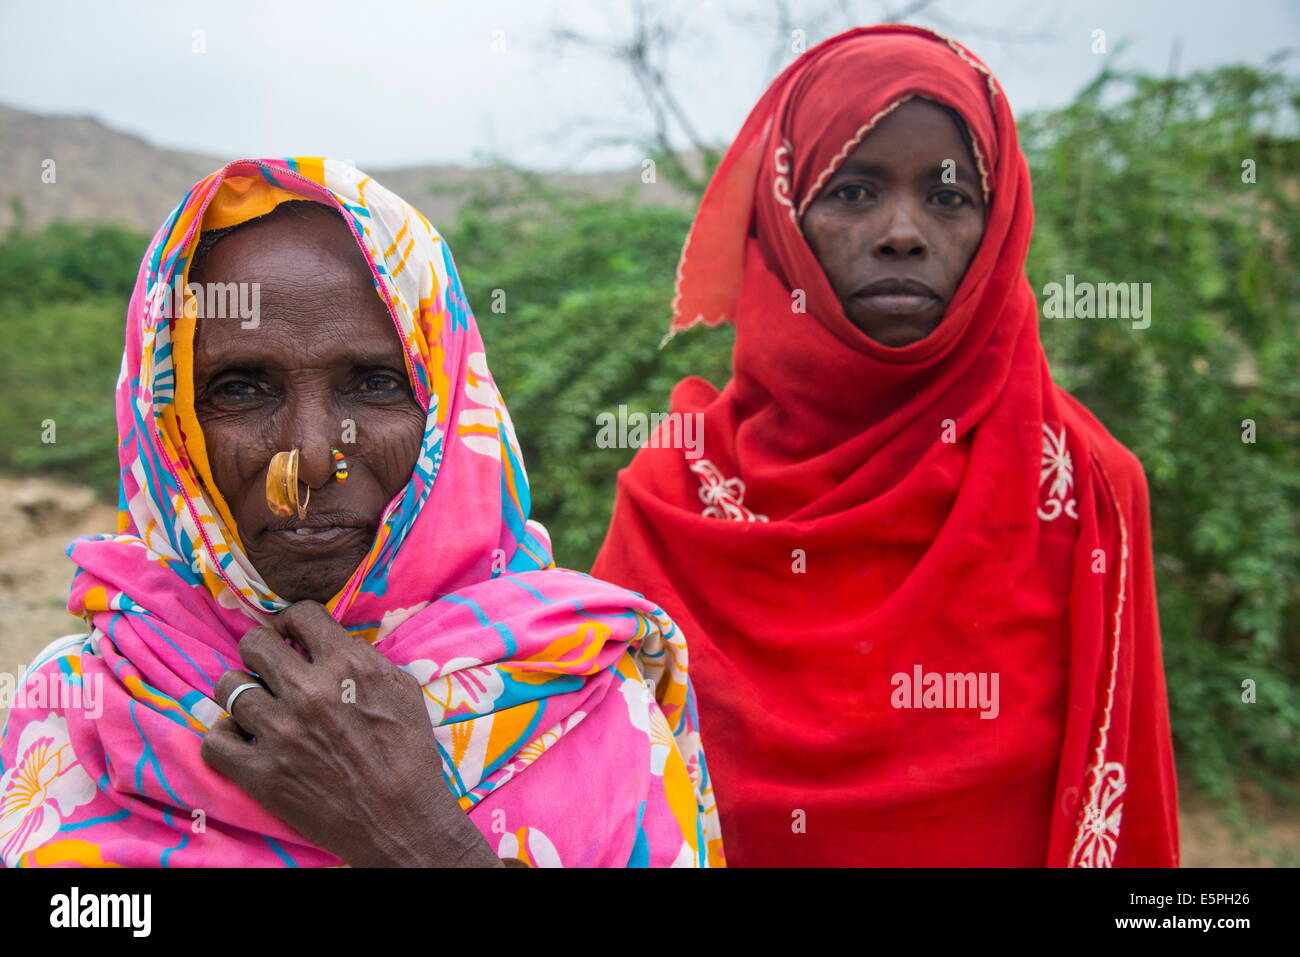 Portrait de deux femmes bédouines érythréenne dans les basses terres de l'Erythrée, l'Afrique Banque D'Images